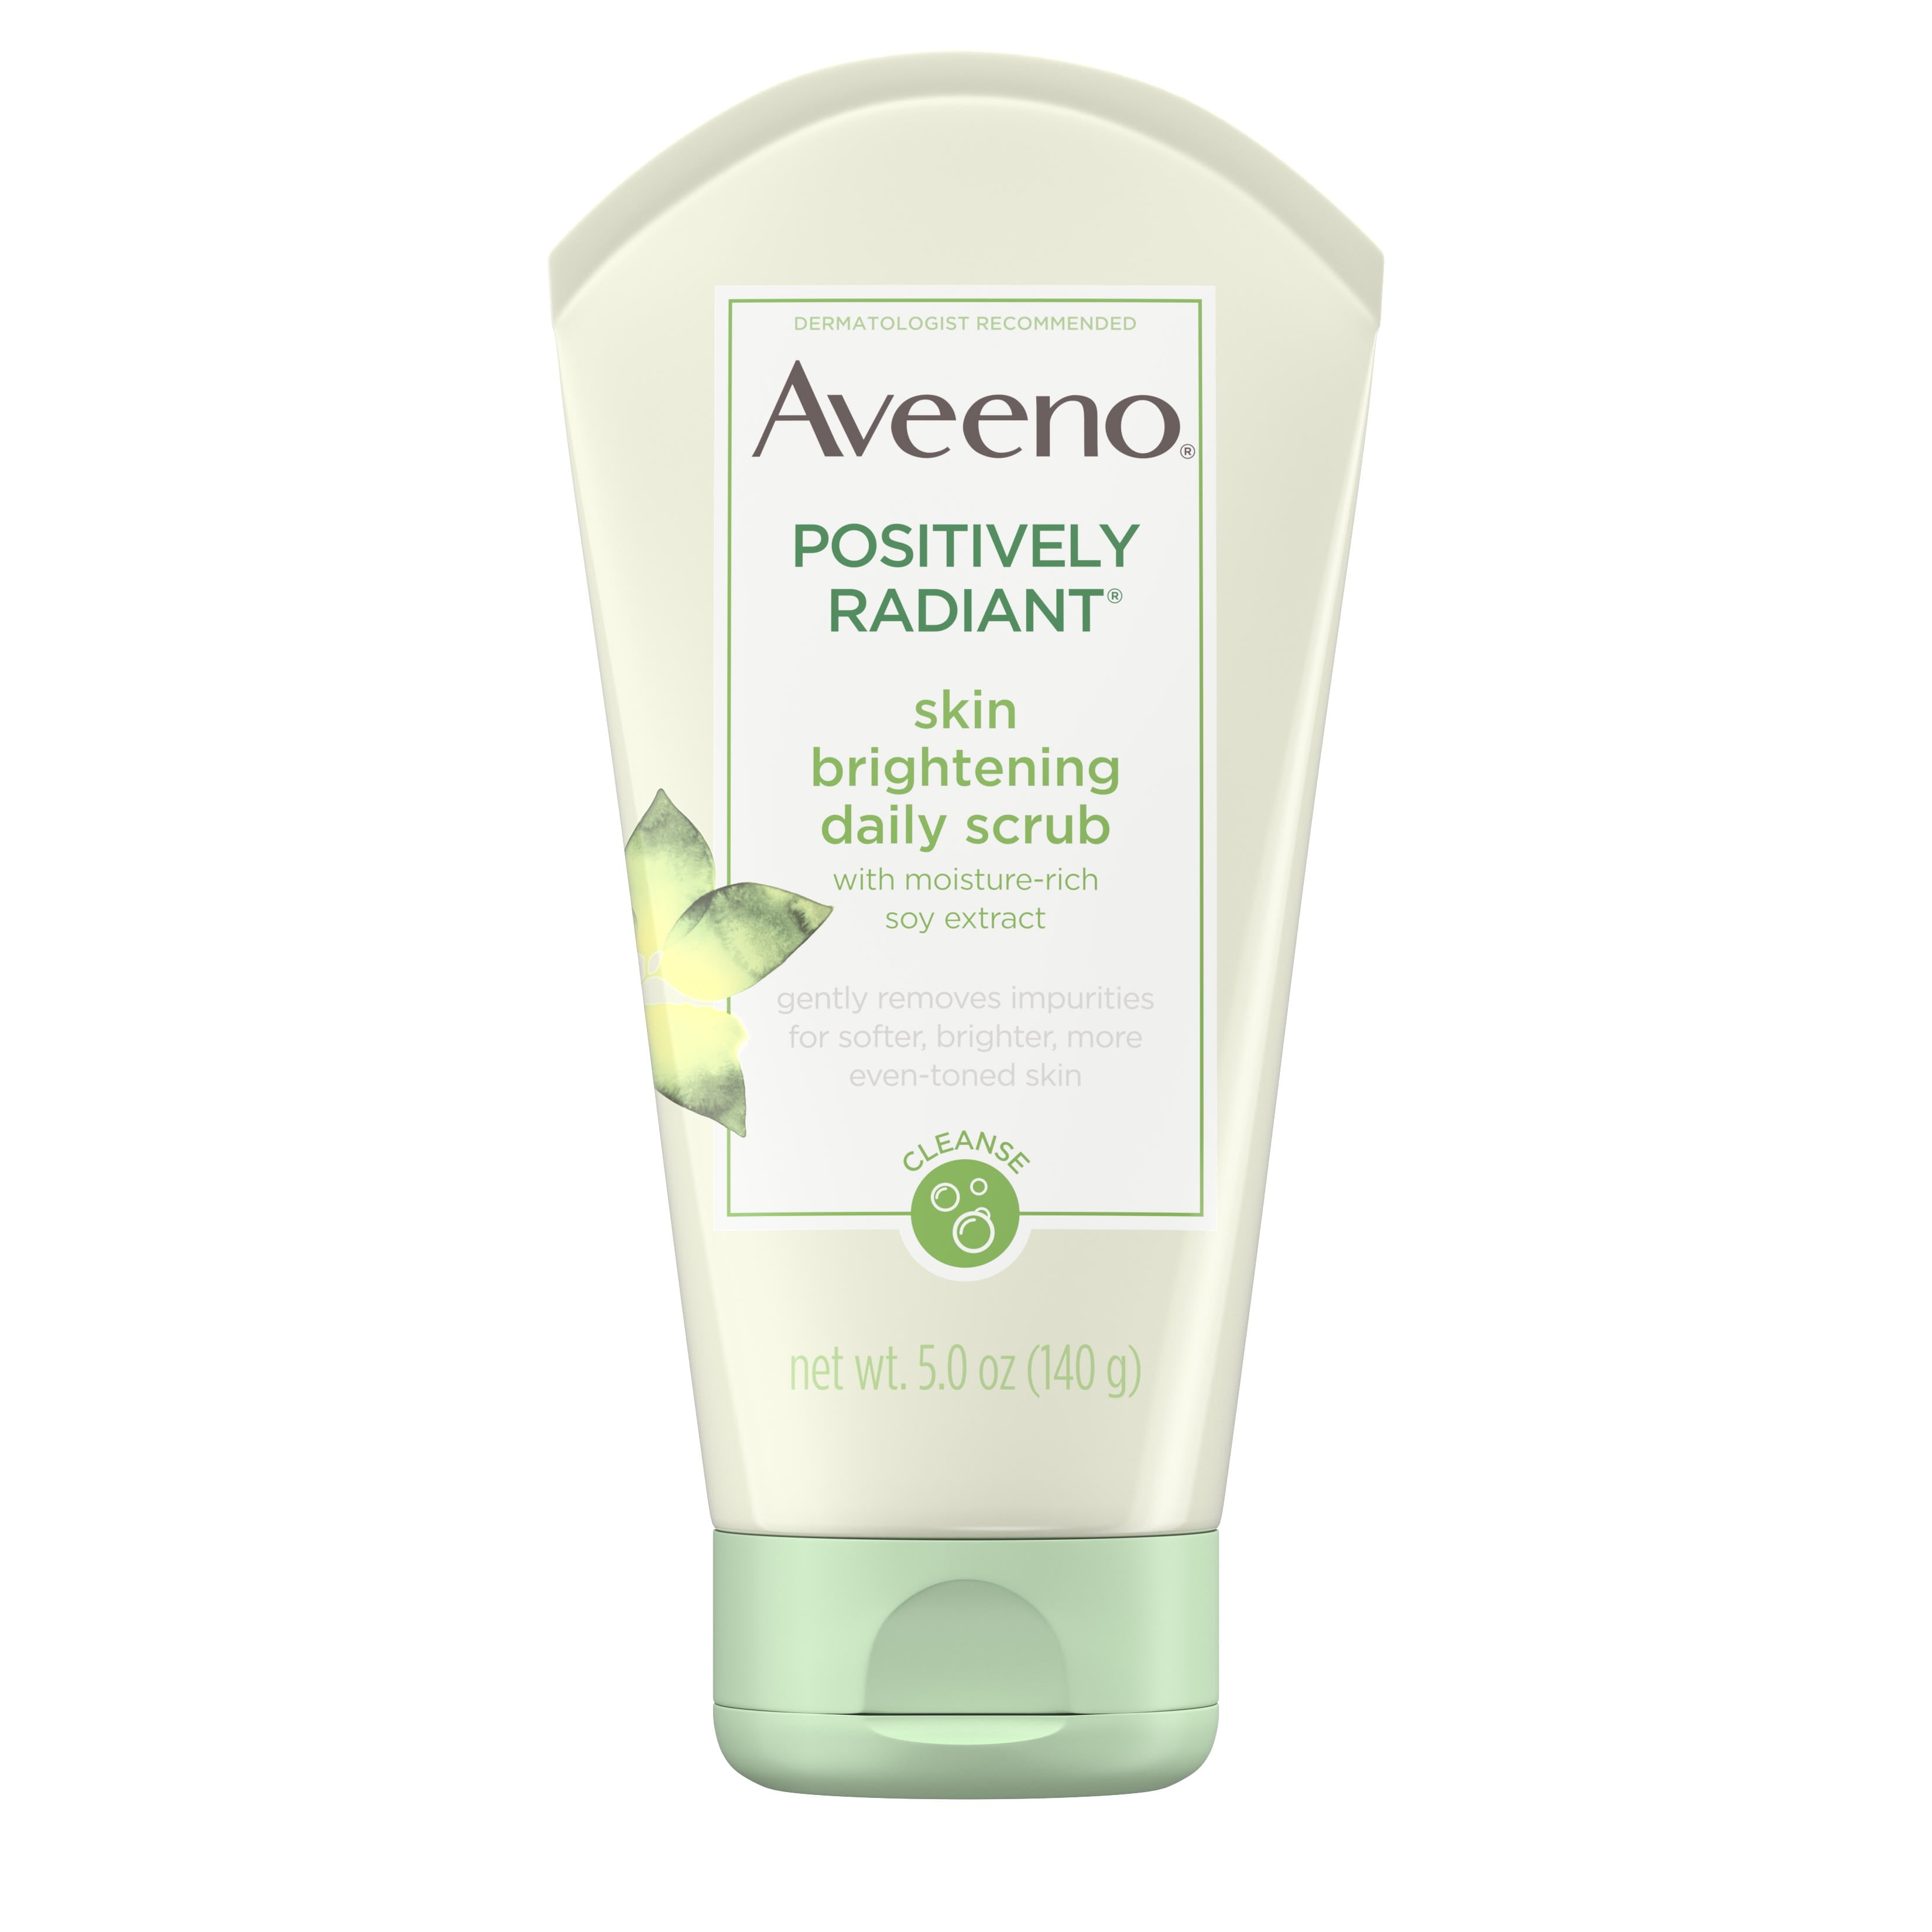 Aveeno Positively Radiant Brightening & Exfoliating Face Scrub, Face Wash, 5 oz